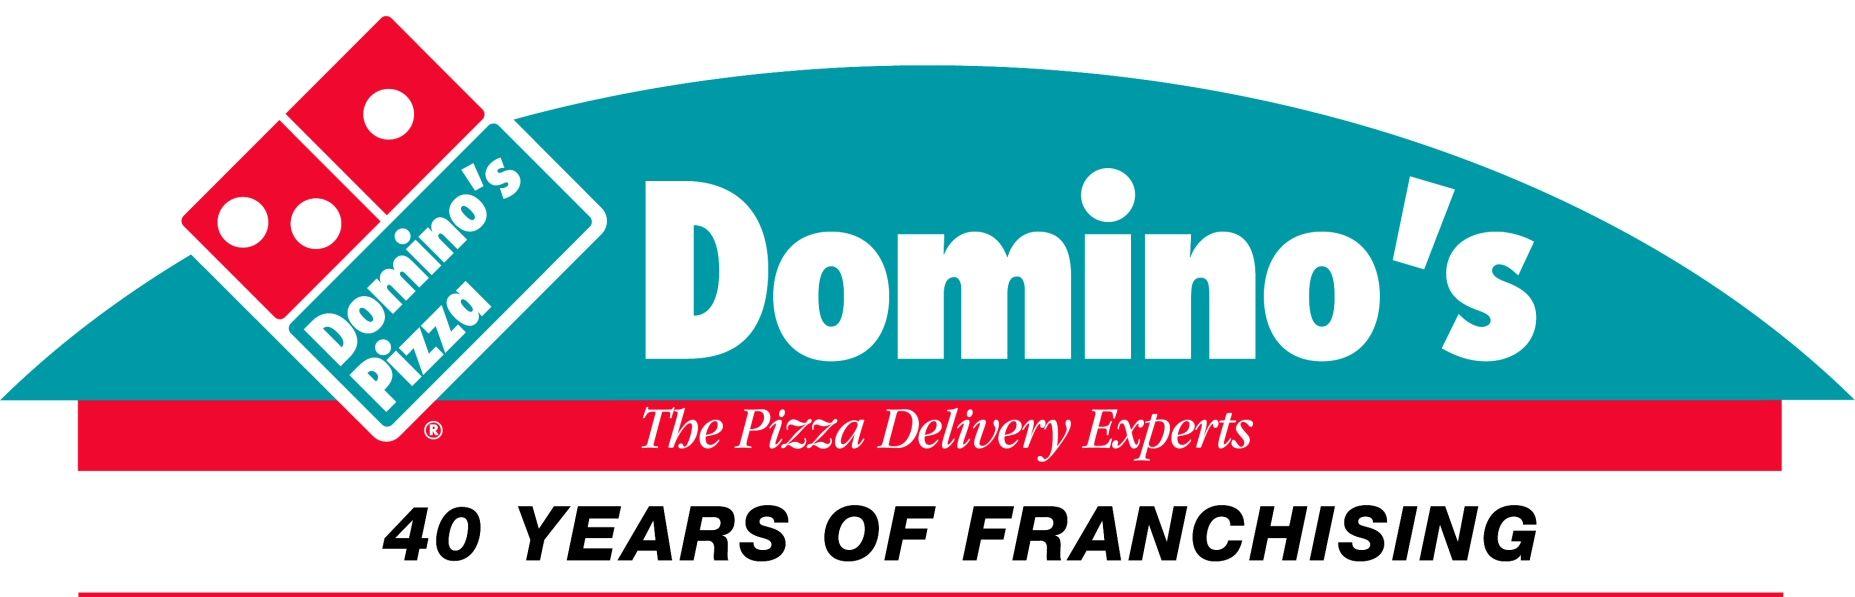 Domino's Logo - Domino's | Logopedia | FANDOM powered by Wikia